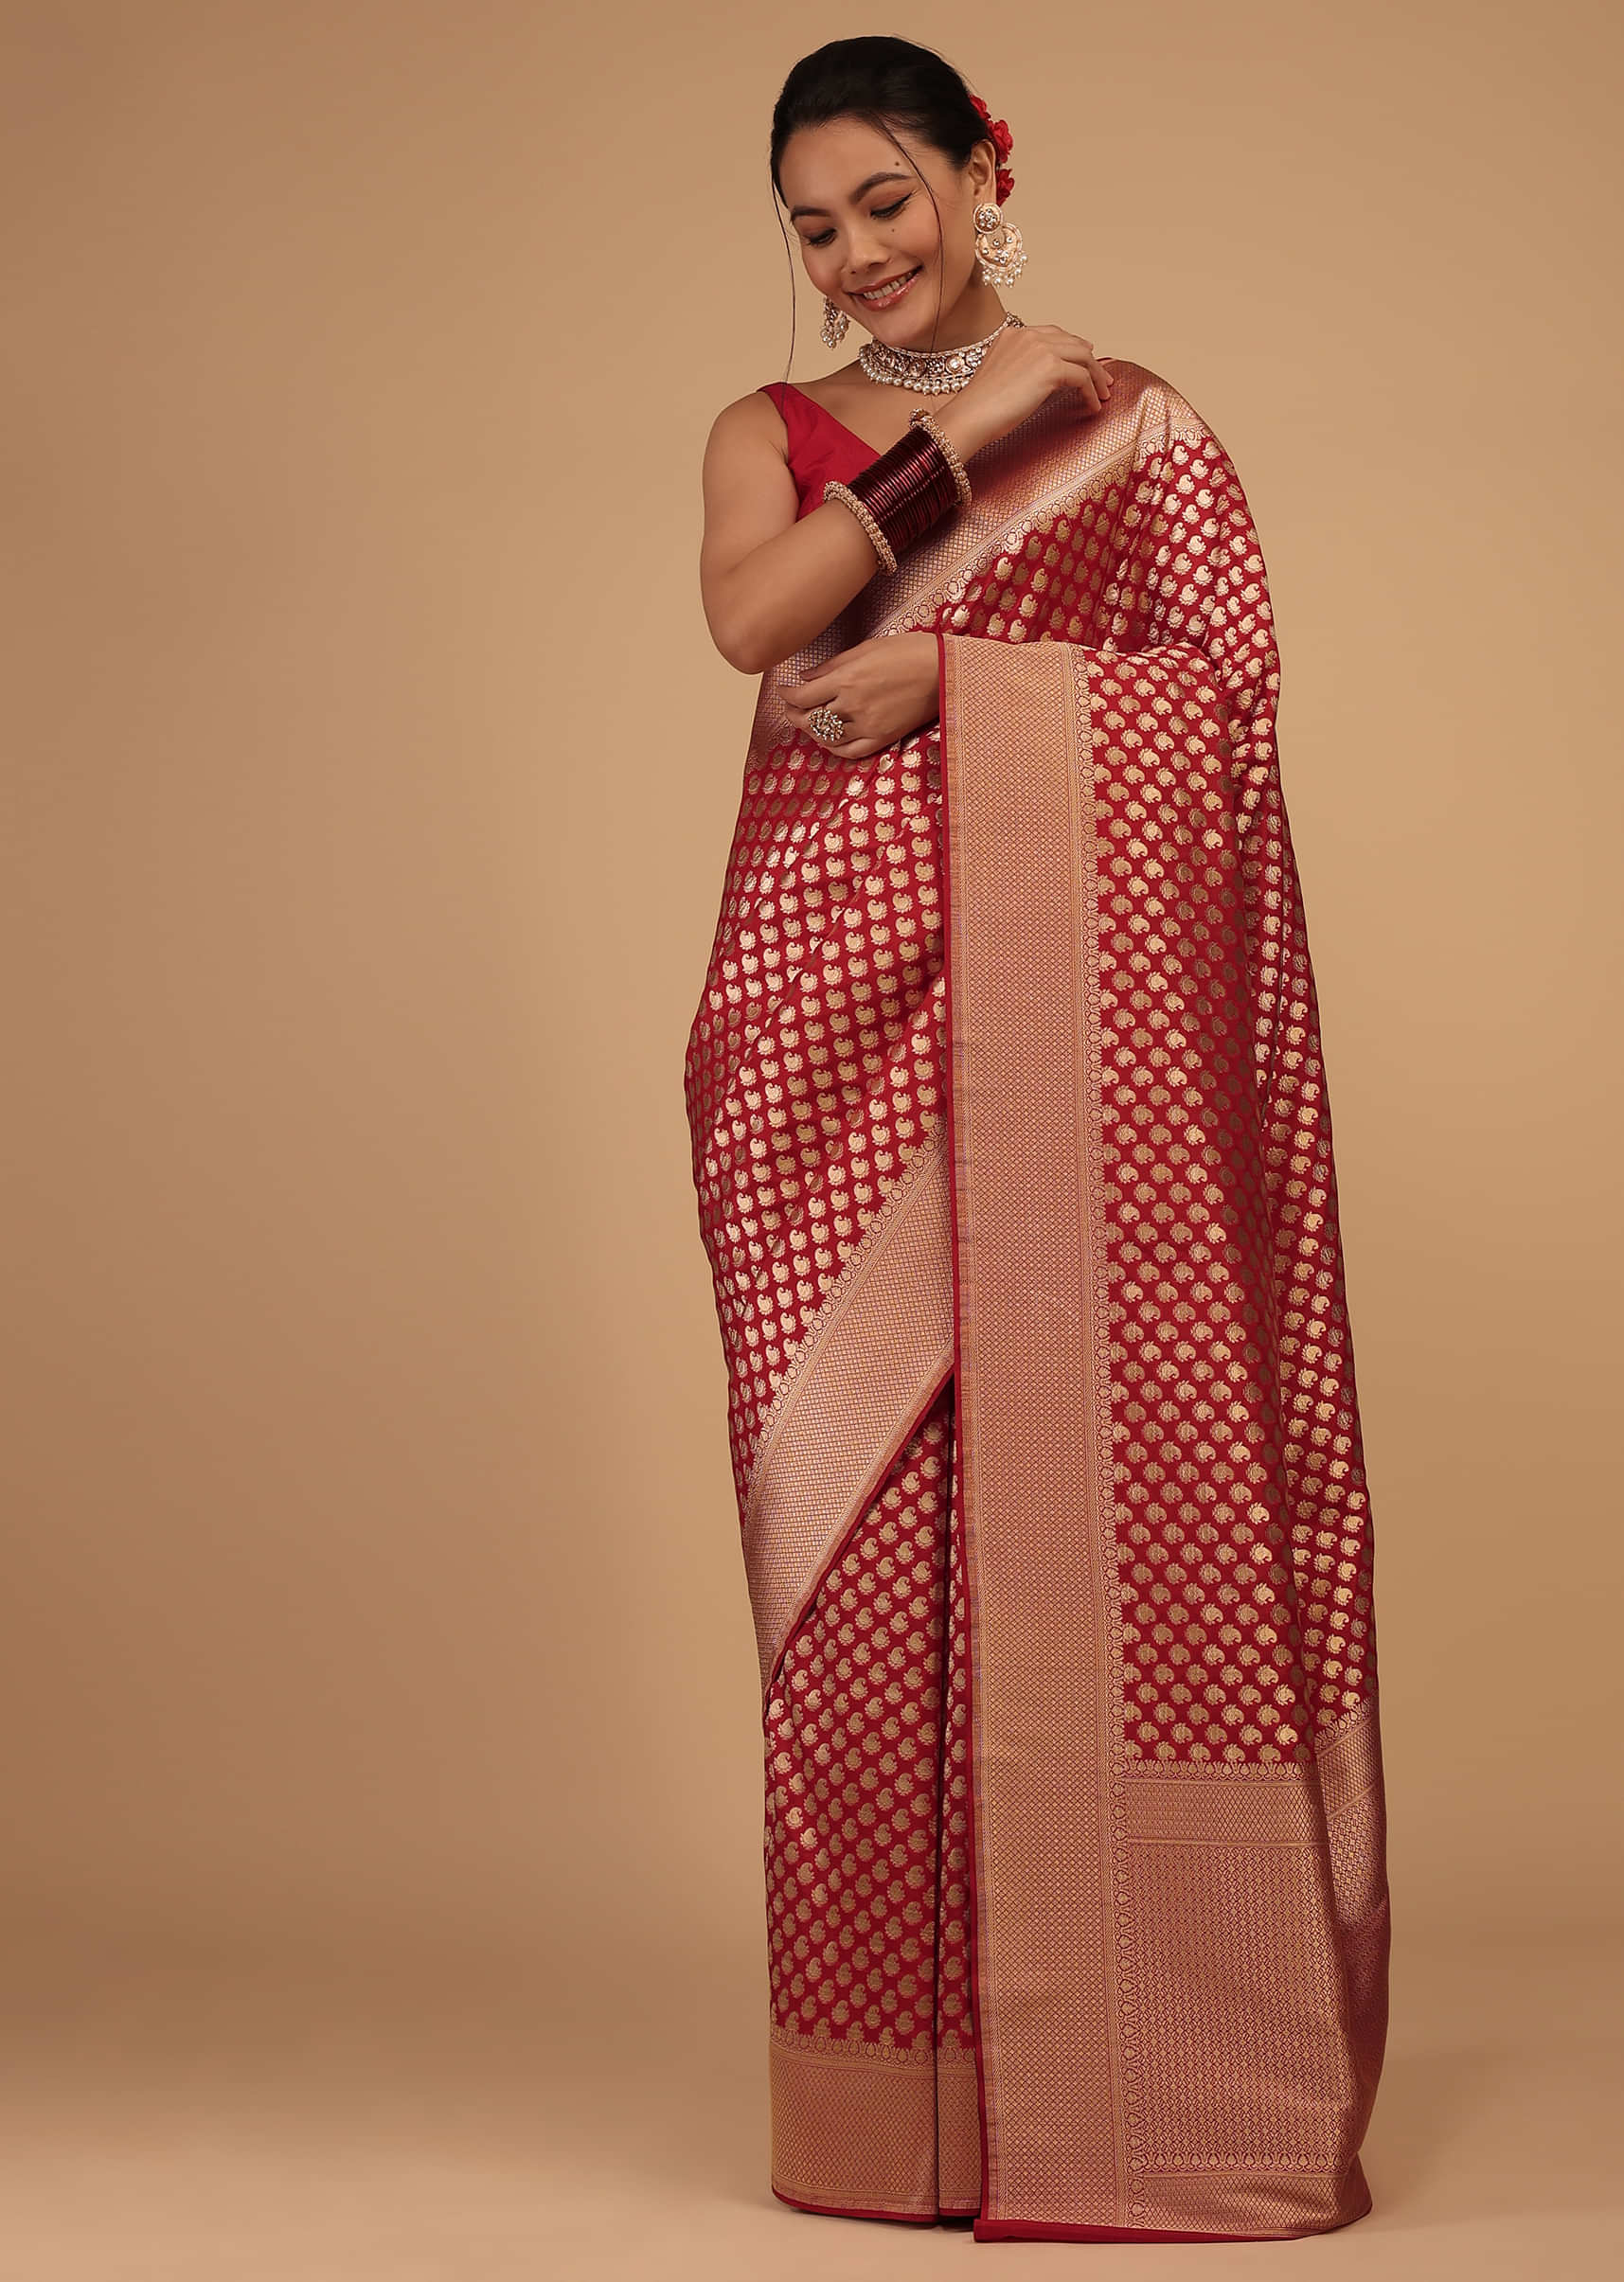 Fiery Red Saree In Pure Banarasi Silk With Upada Zari Weave Butti Work